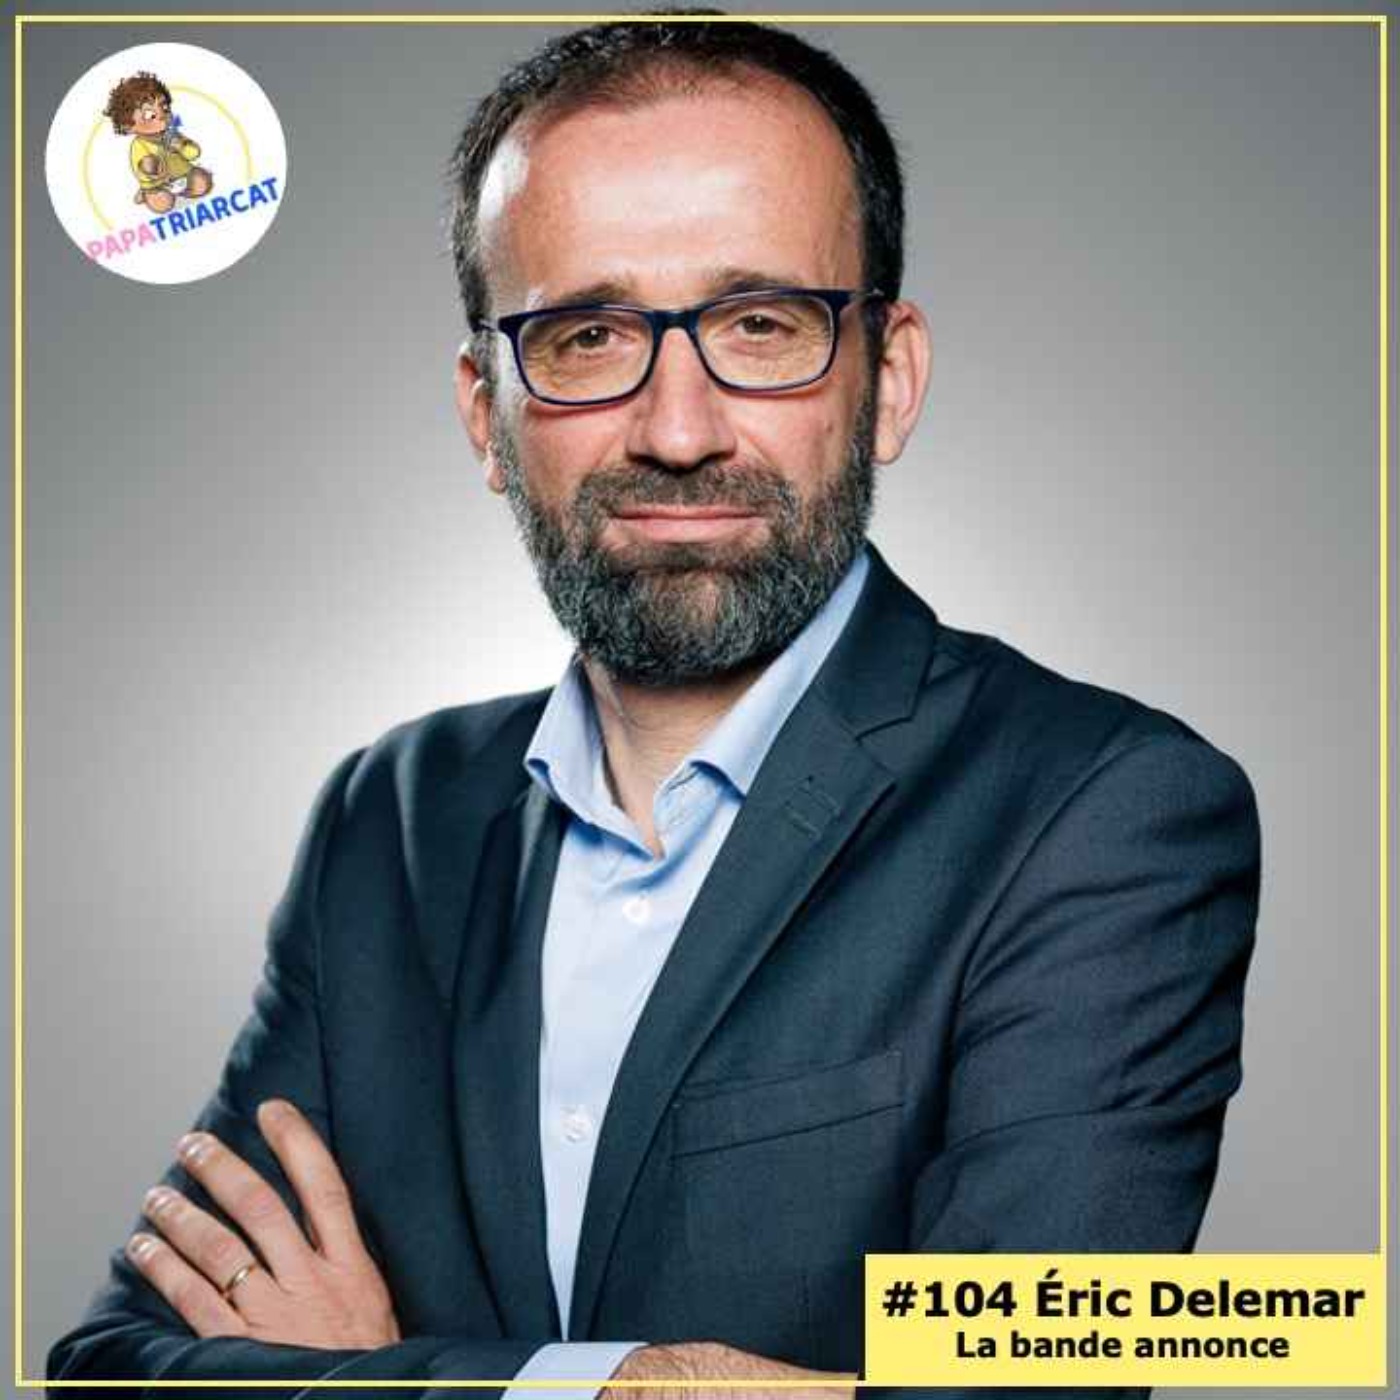 BANDE ANNONCE #104 - Défendre les Droits de l'enfant - Éric Delemar